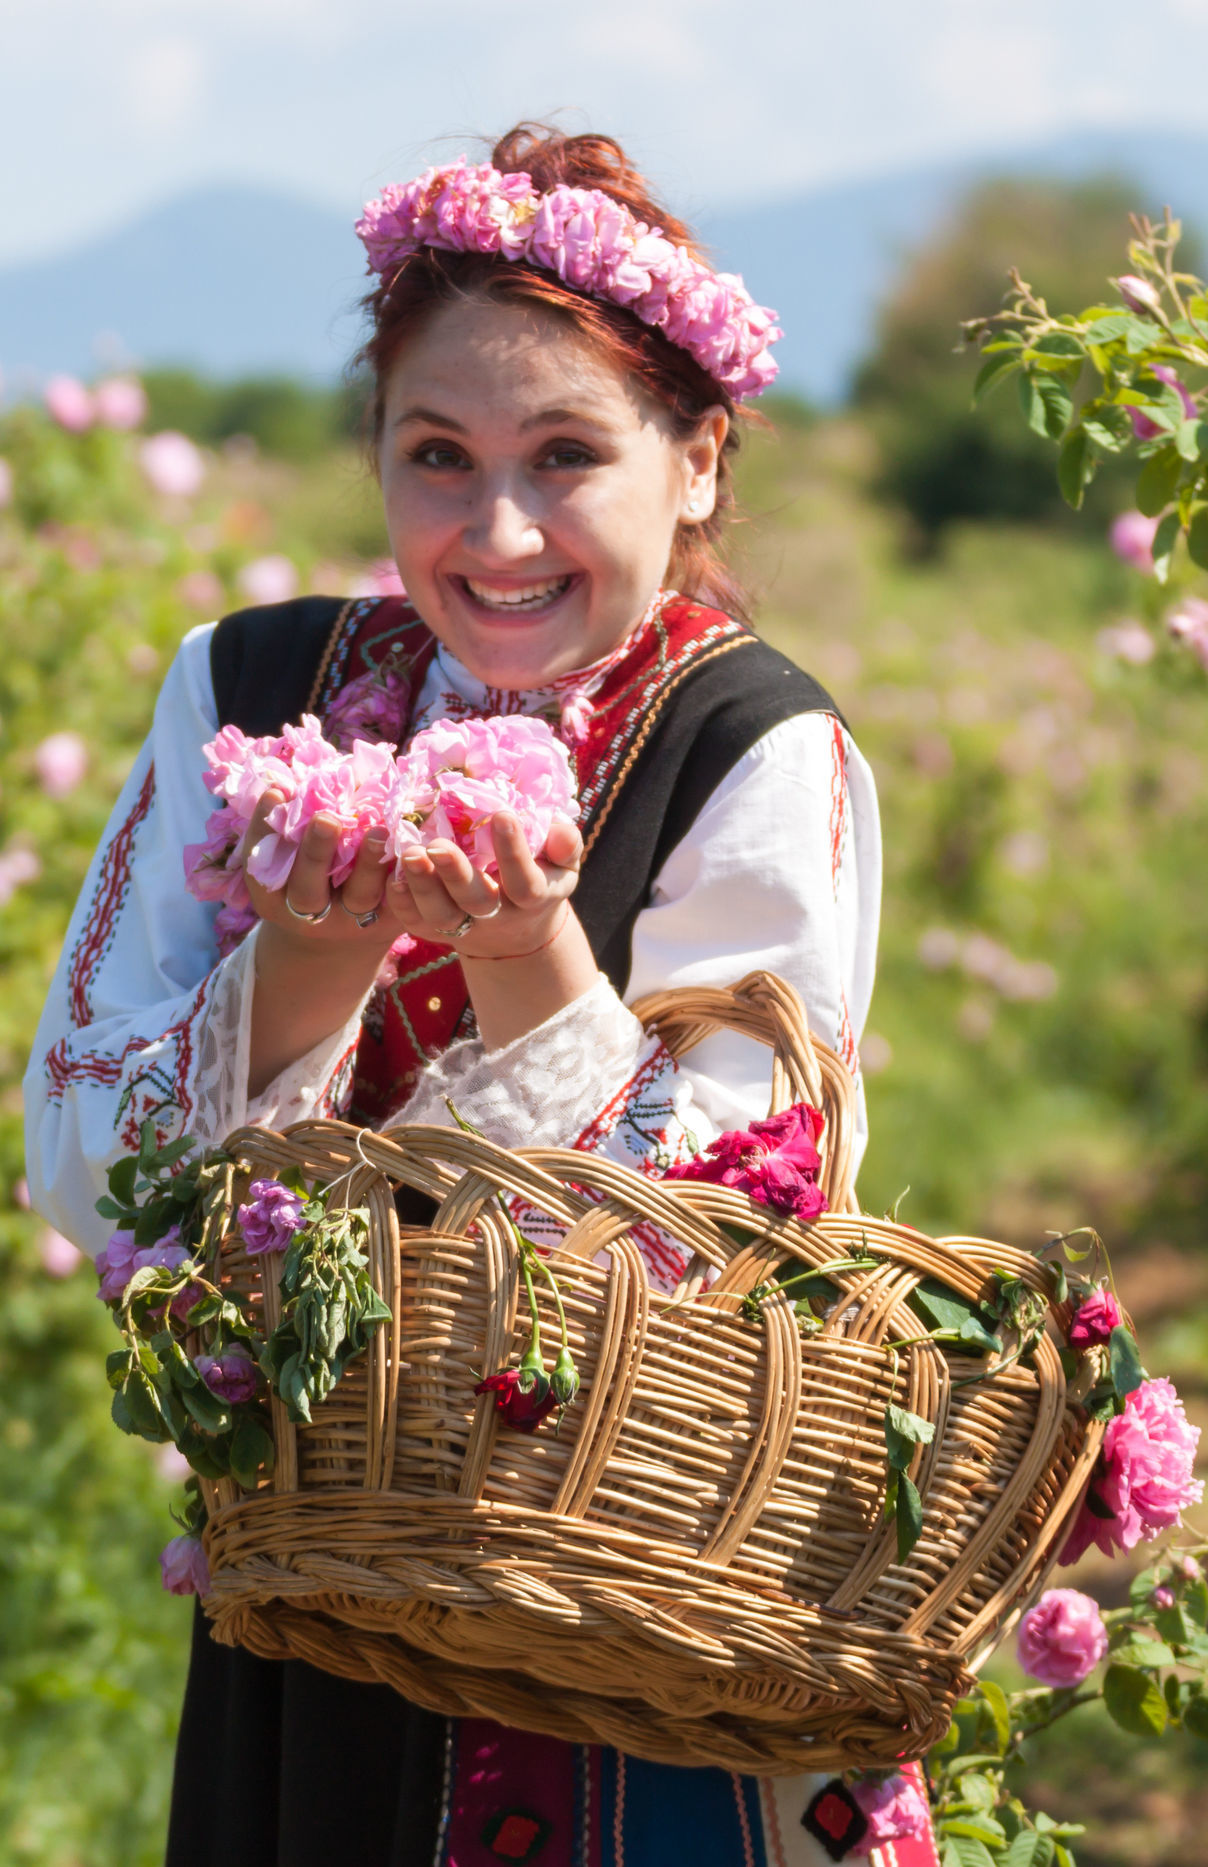 เทศกาลเก็บเกี่ยวดอกกุหลาบ ประเทศบัลแกเรีย